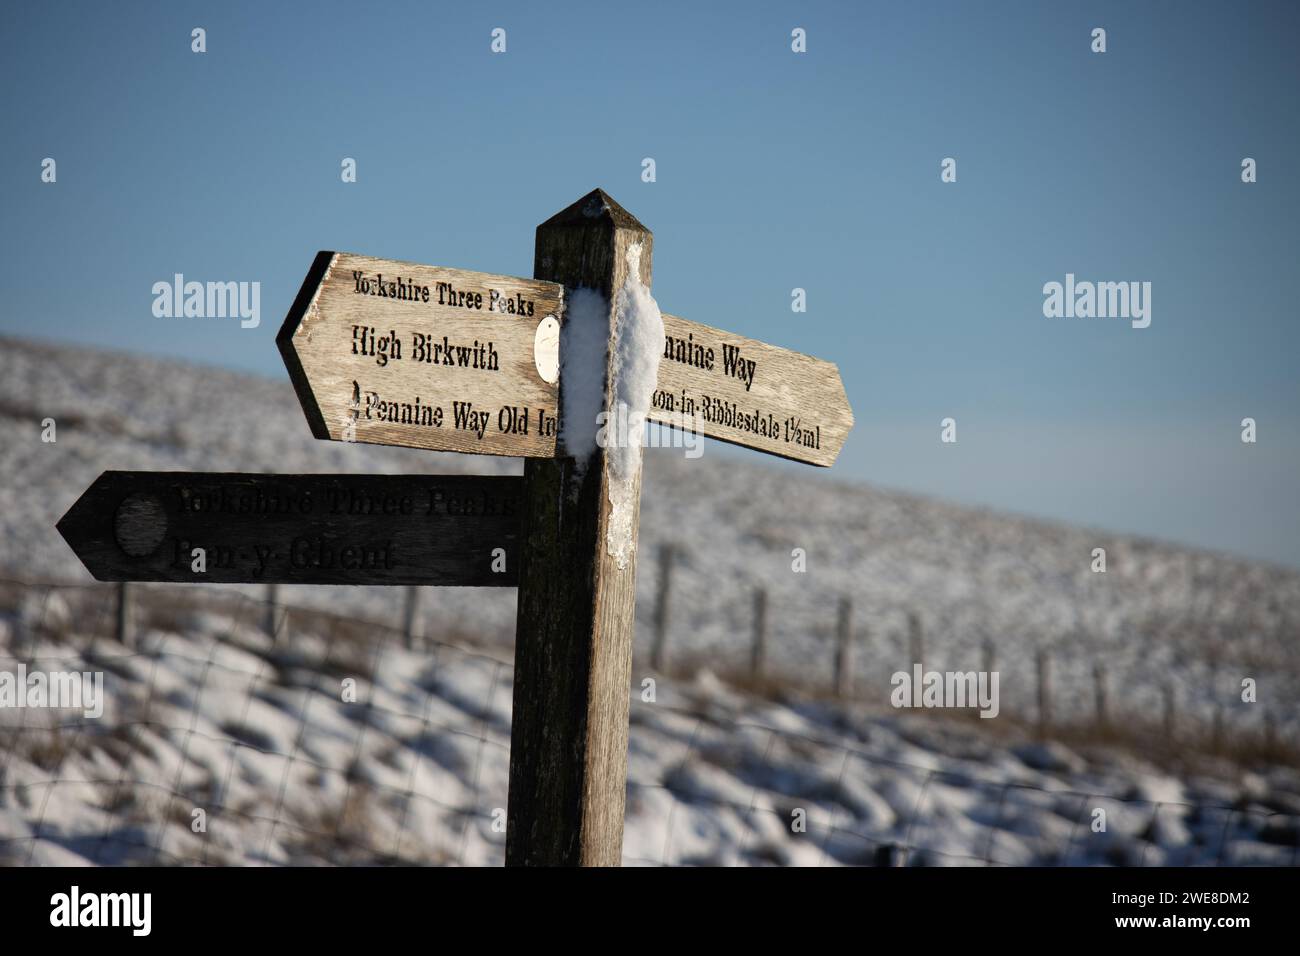 Un cartello per la strada Yorkshire Three Peaks e la Pennine Way vicino a High Birkwith in inverno nel Parco Nazionale Yorkshire Dales in Inghilterra. Foto Stock